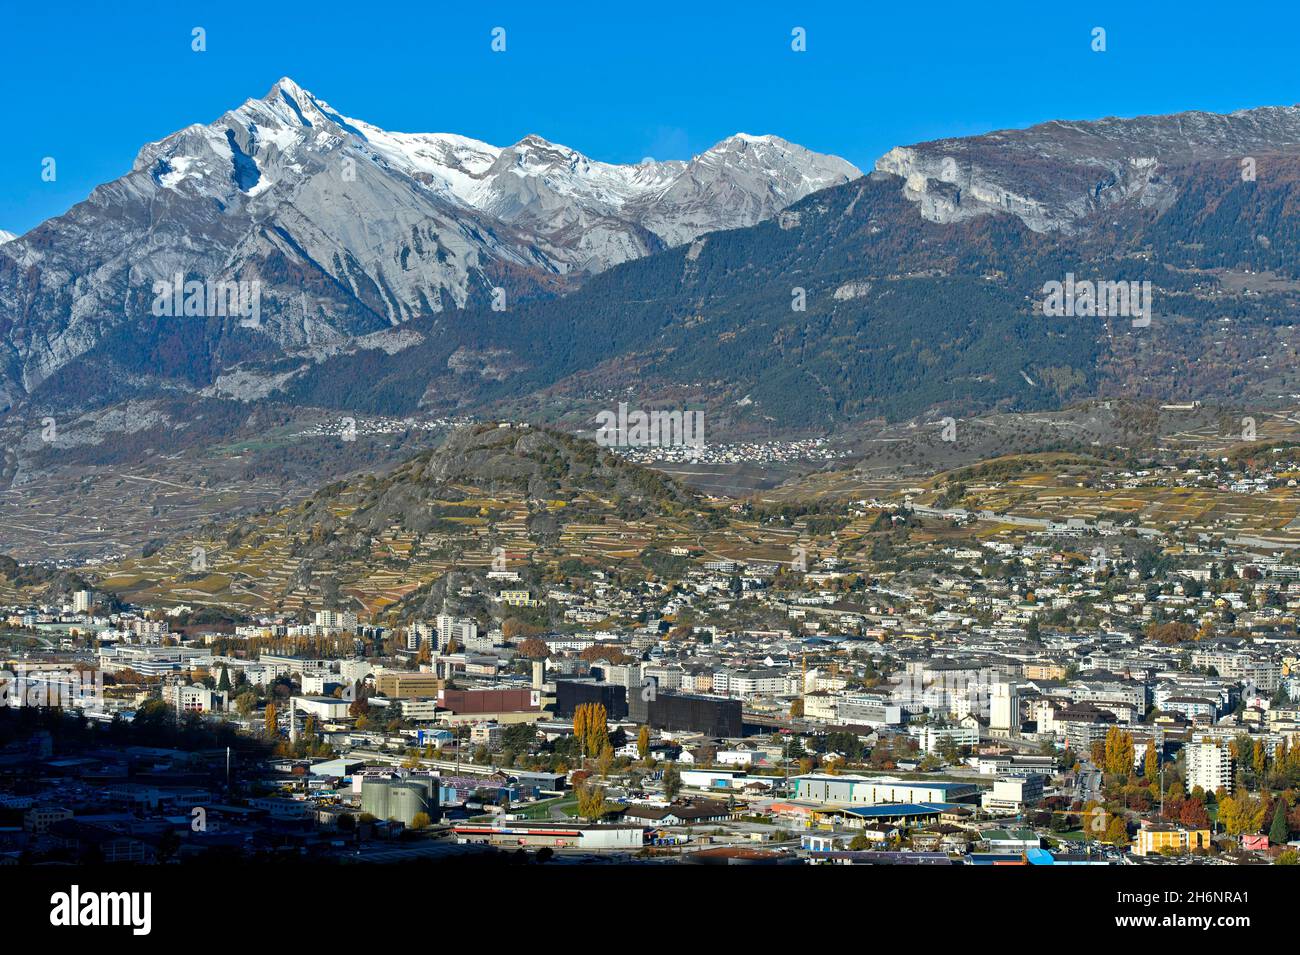 La capitale cantonale du Valais, Sion, également connue sous le nom de Sitten, sommet du Haut de Cry à l'arrière, Valais, Suisse Banque D'Images